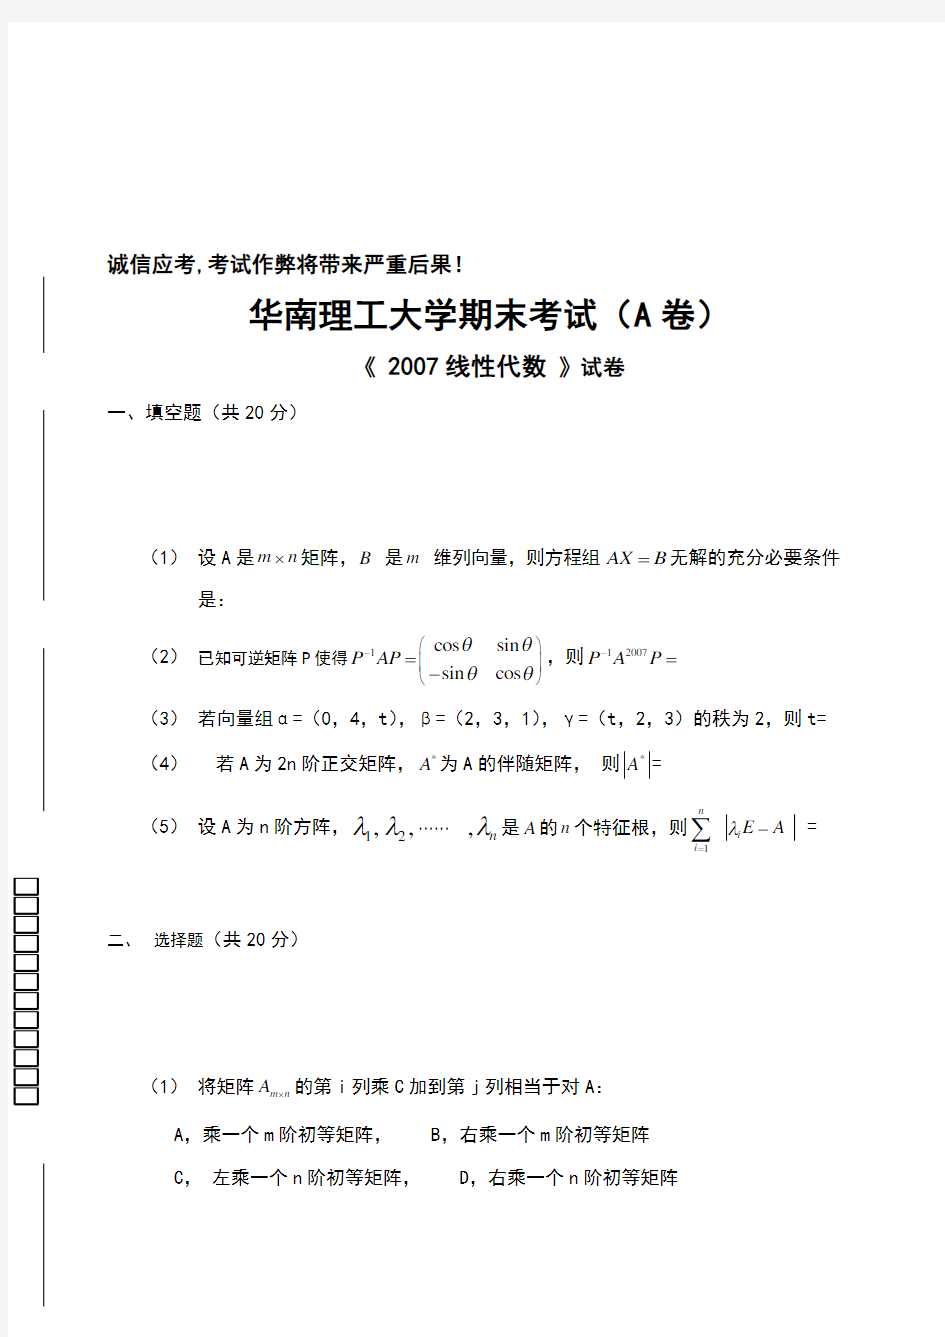 华南理工大学 线性代数与解析几何 试卷 (8)